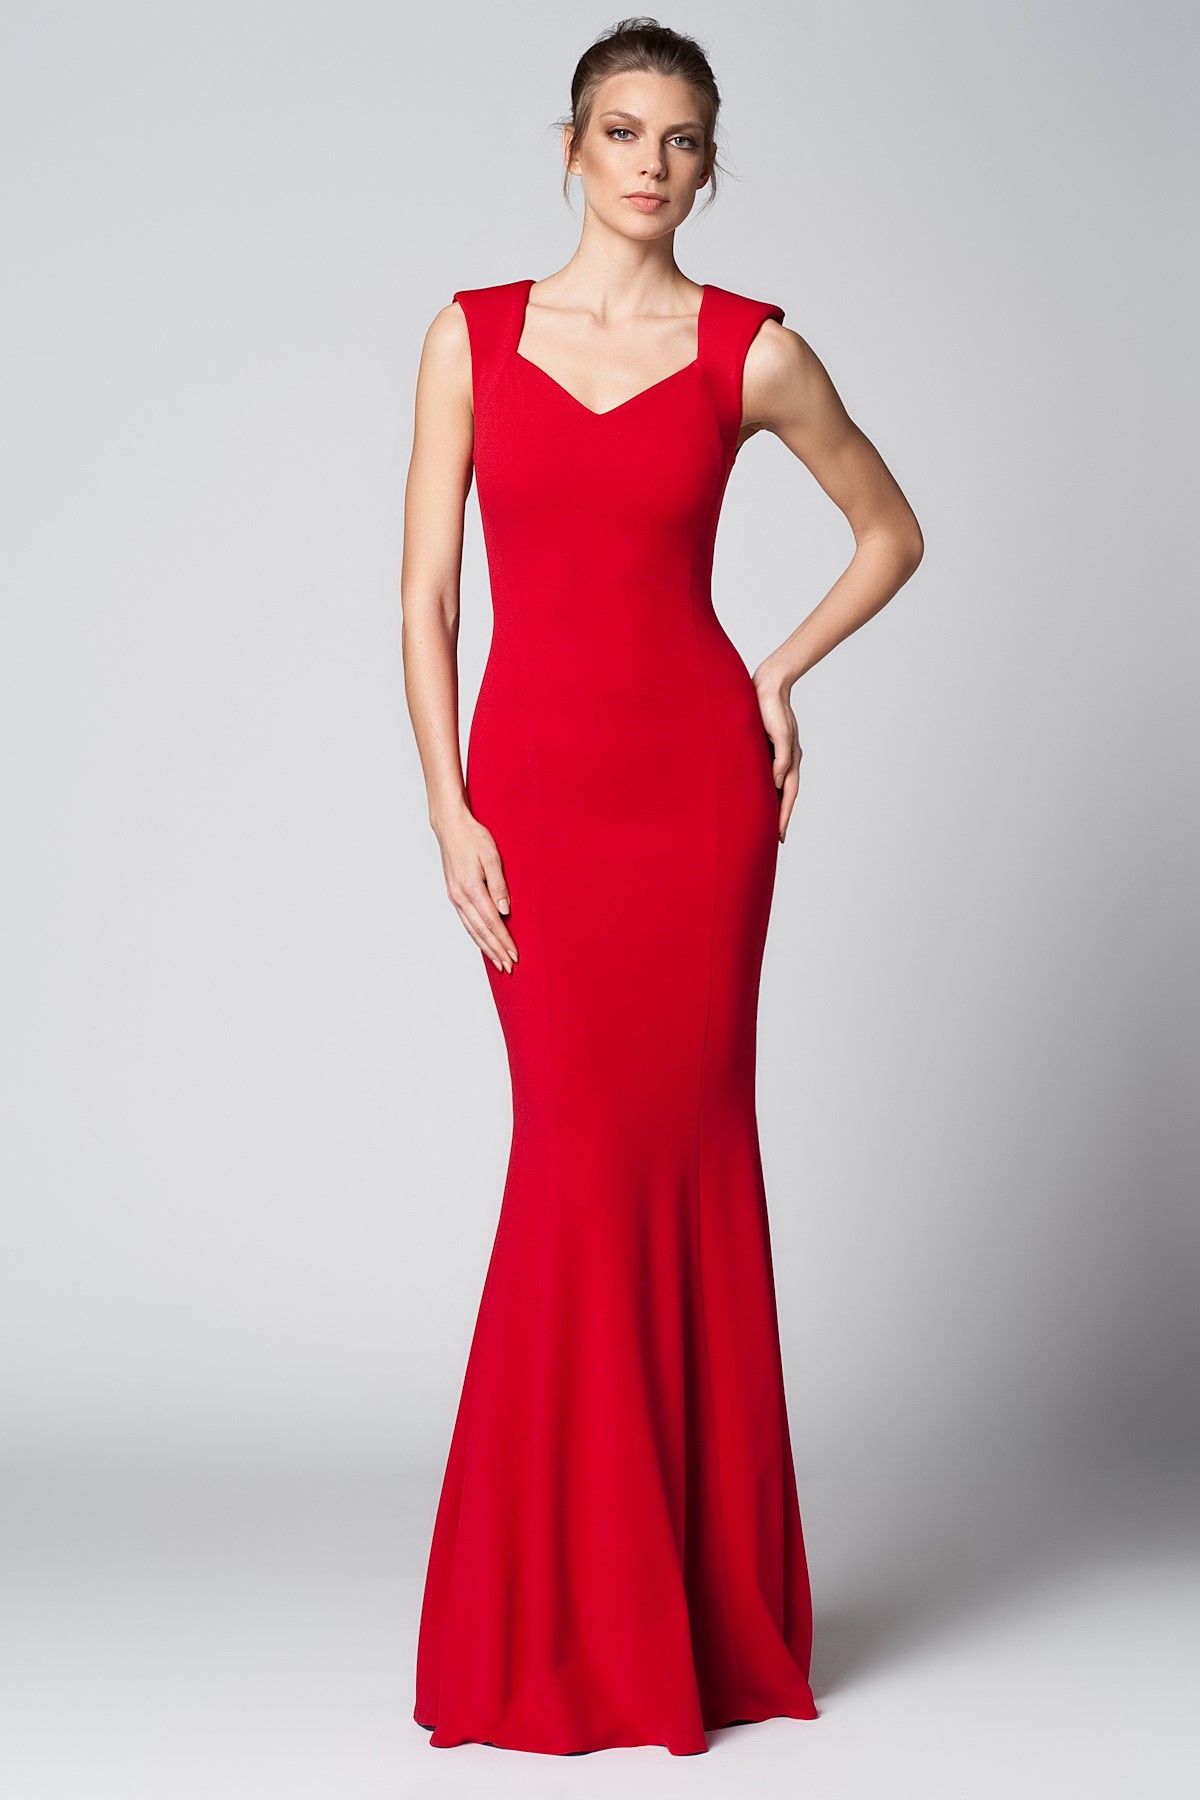 Askılı Kırmızı 2015 Mezuniyet Elbisesi Modelleri